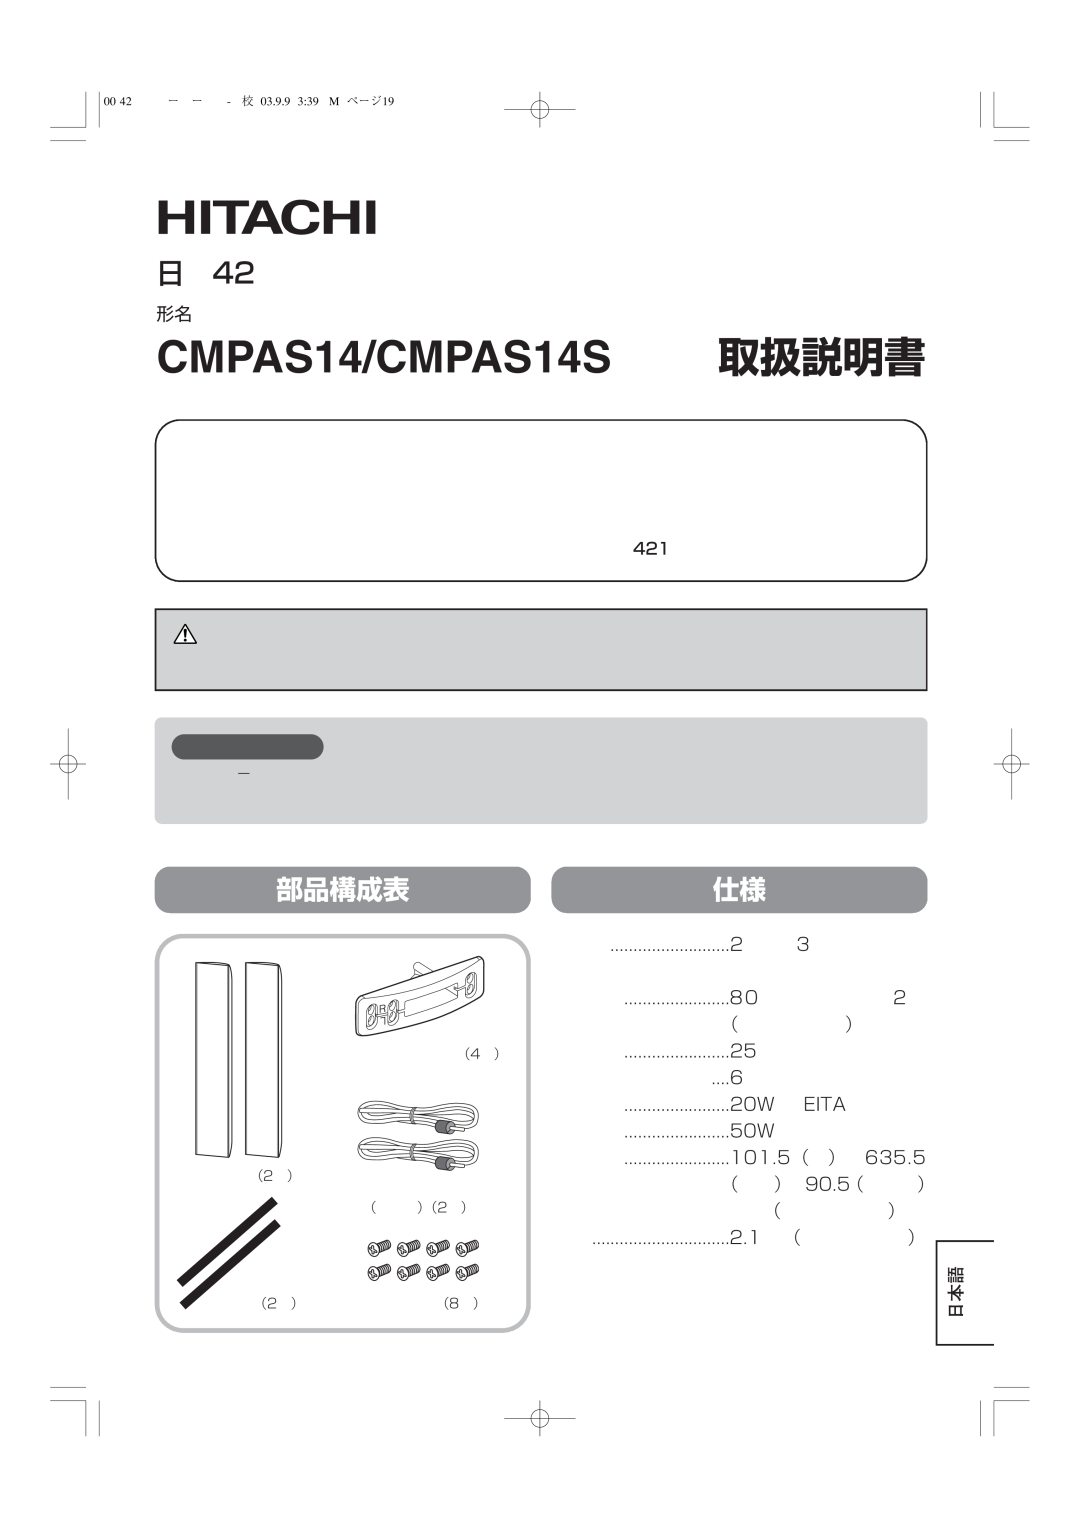 Hitachi 42PD5000 user manual お守りください, CMPAS14/CMPAS14S 取扱説明書, 日立42V型プラズマディスプレイ専用スピーカーシステム, 部品構成表仕様 